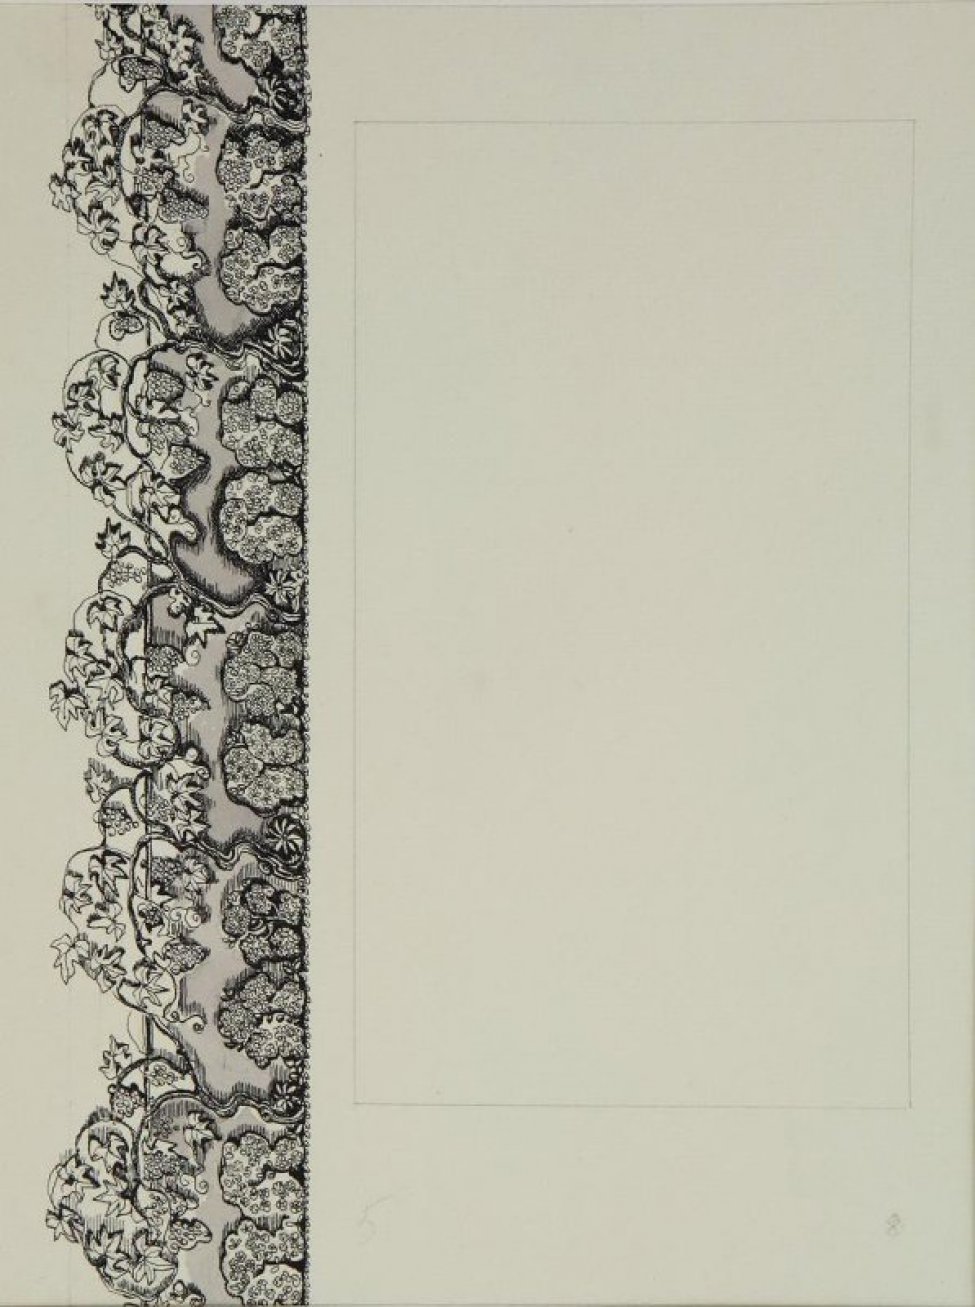 В левой части листа - вертикальный орнамент из стилизованных кустарников и виноградных лоз.